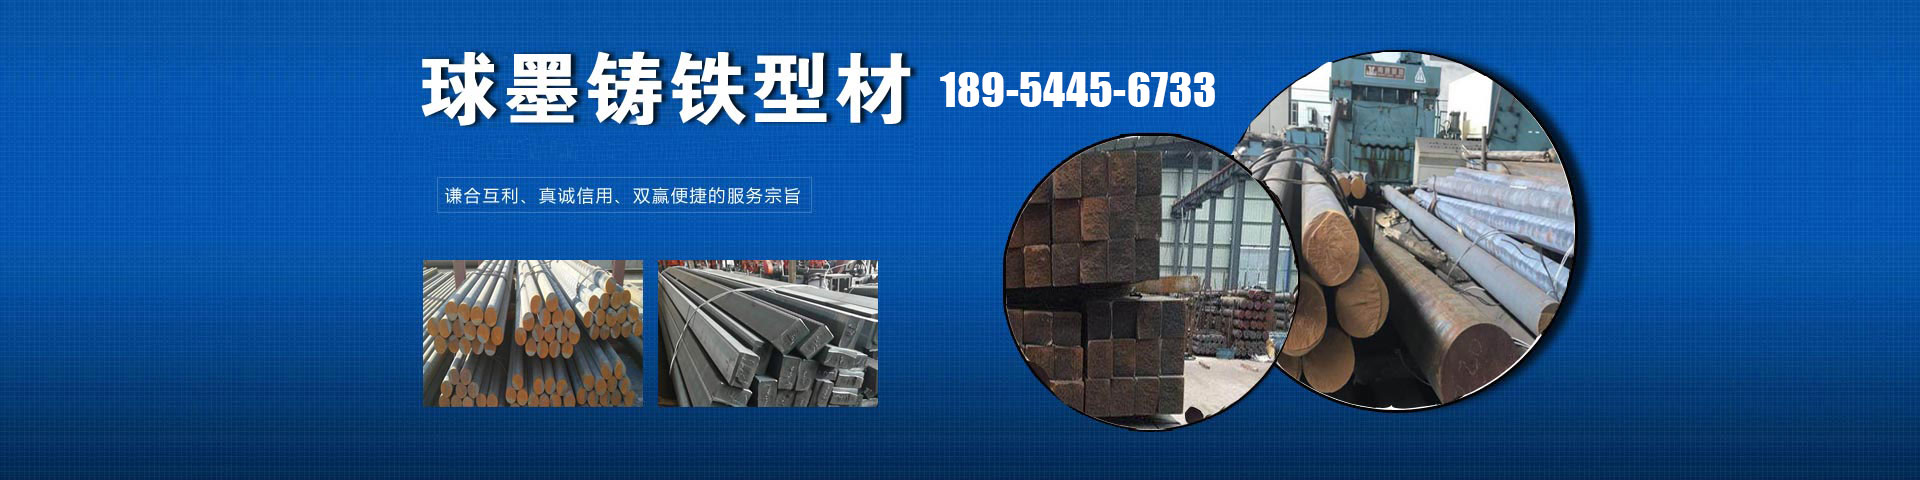 弹簧钢带生产厂家、南宁本地弹簧钢带生产厂家、南宁、南宁弹簧钢带生产厂家